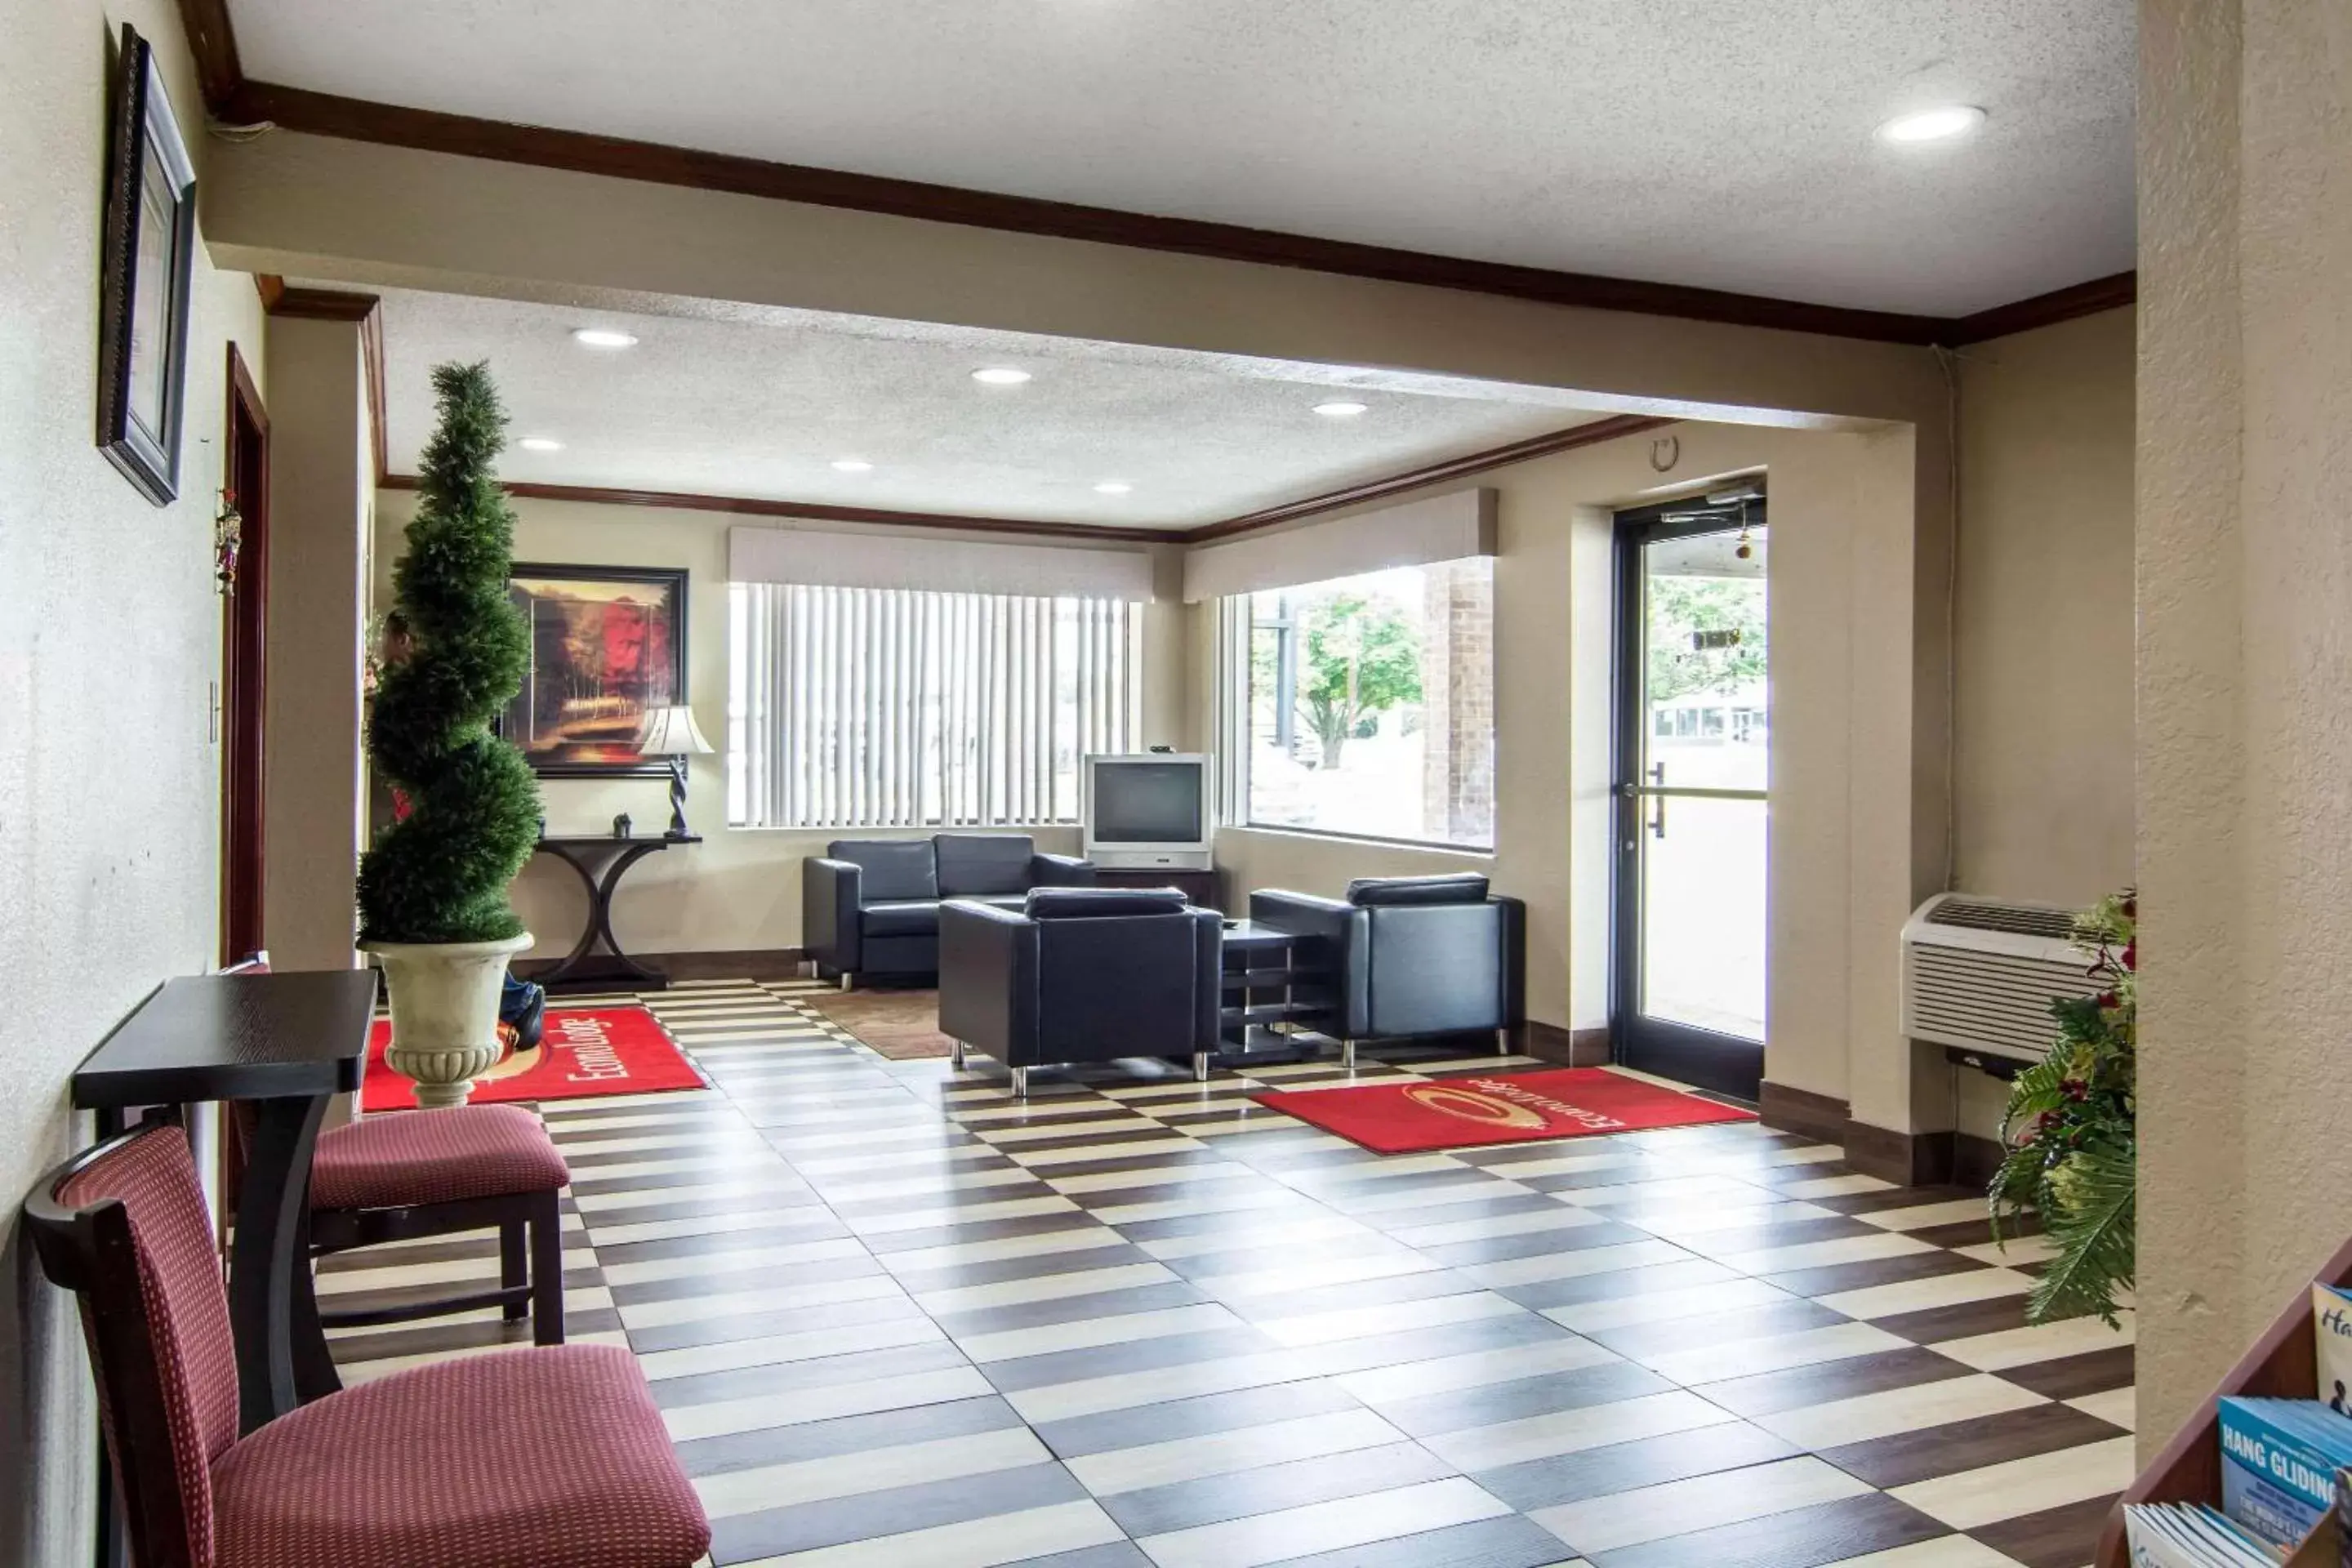 Lobby or reception in Econo Lodge Weldon - Roanoke Rapids